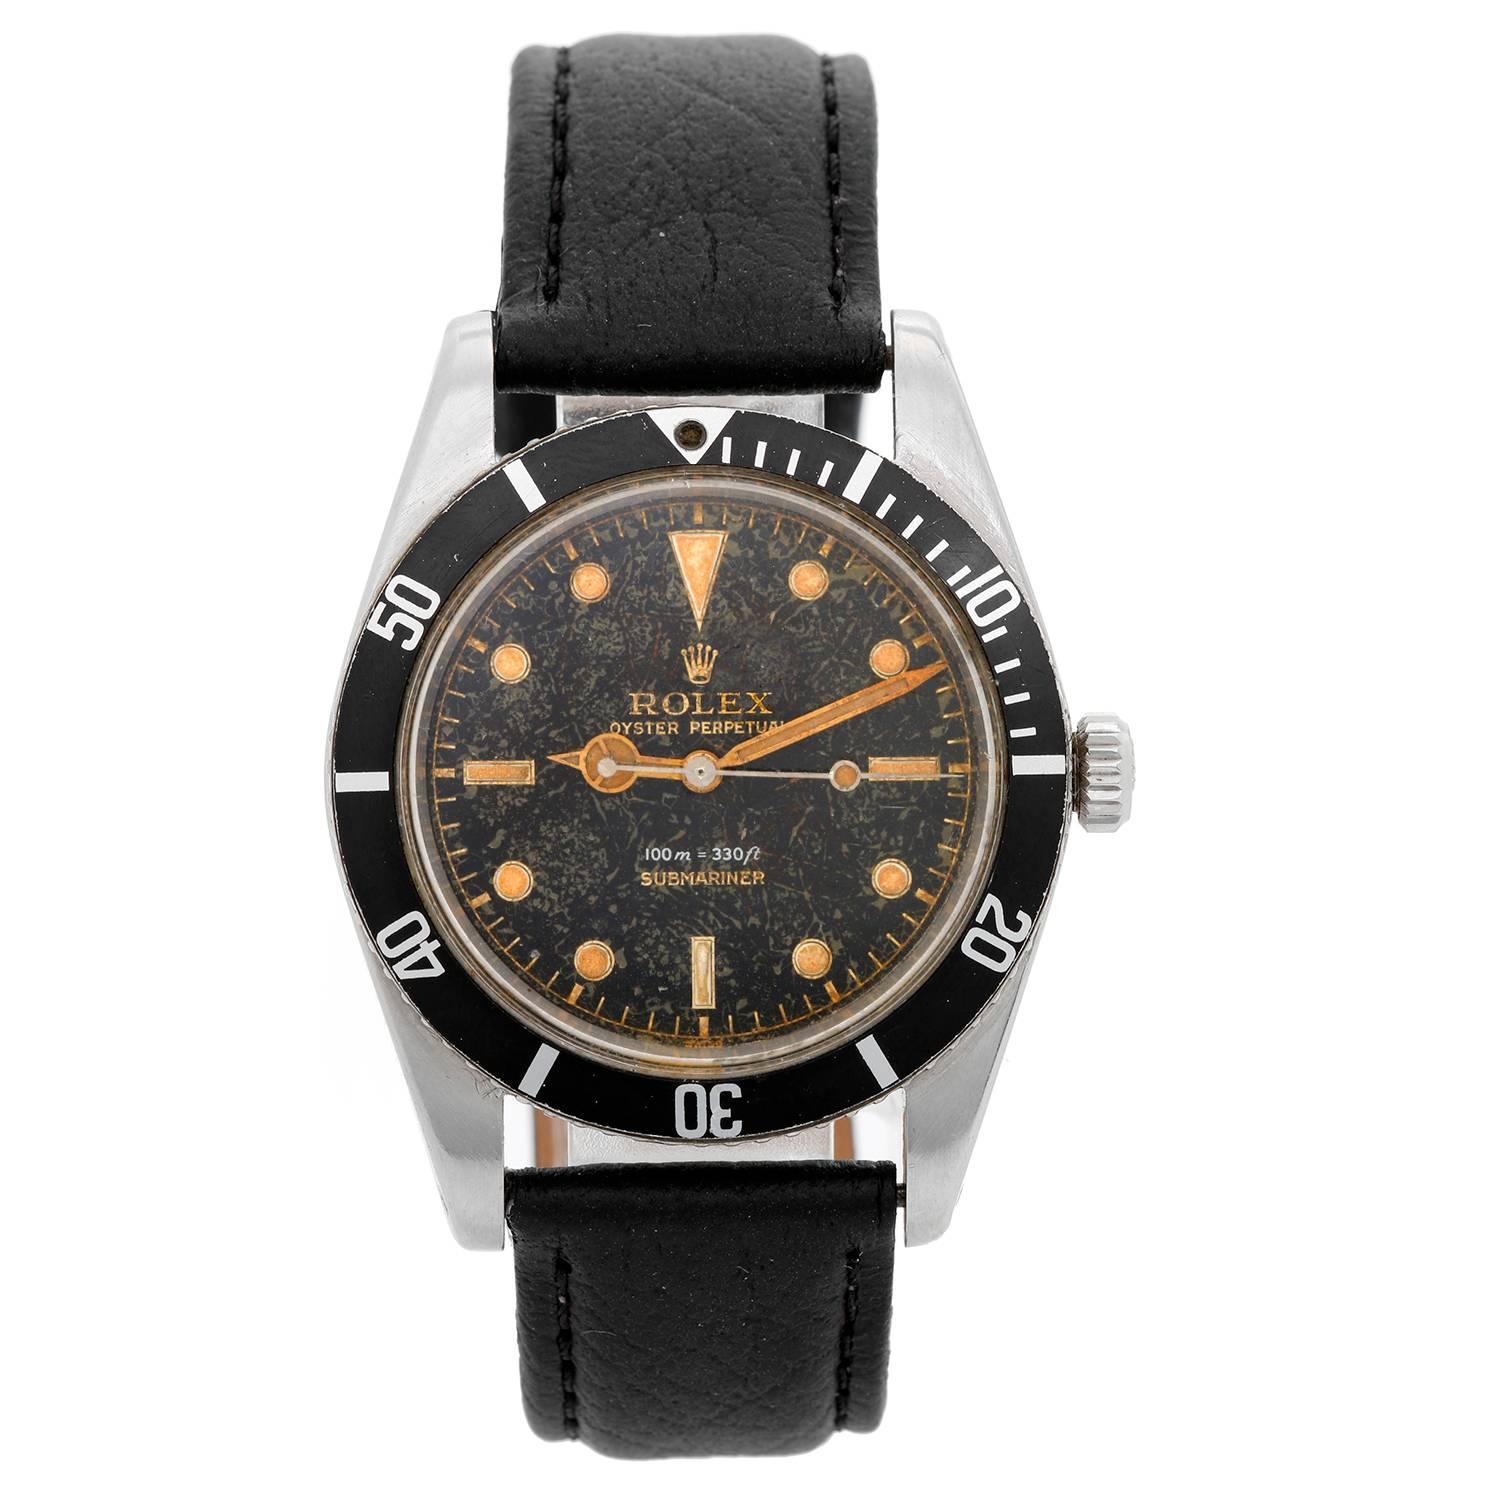 Rolex Stainless Steel James Bond Submariner Self Winding Wristwatch Ref 6536/1